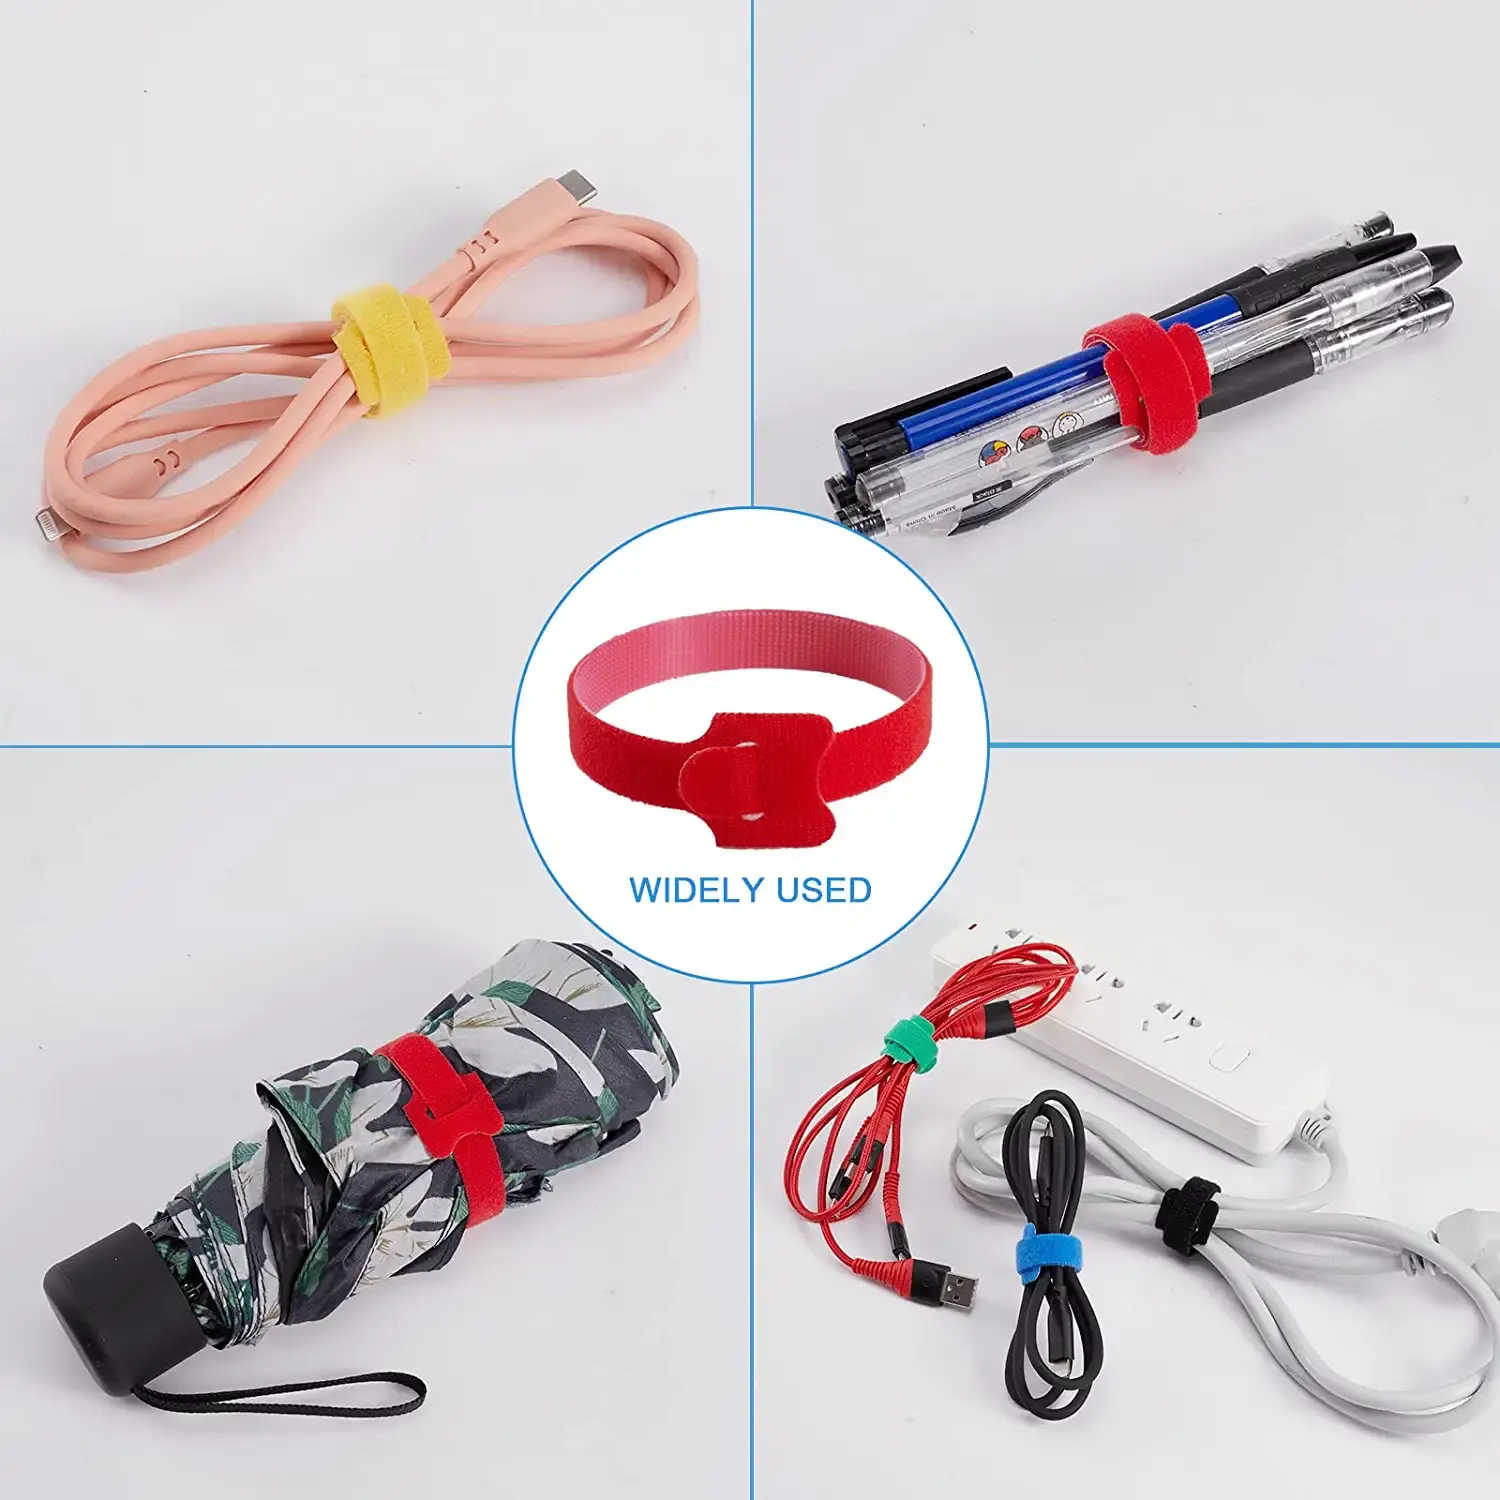 Gerenciamento de Fixação Wire Wraps Ajustável Cord Ties Gancho e Loop cabo cintas abraçadeiras & organizadores